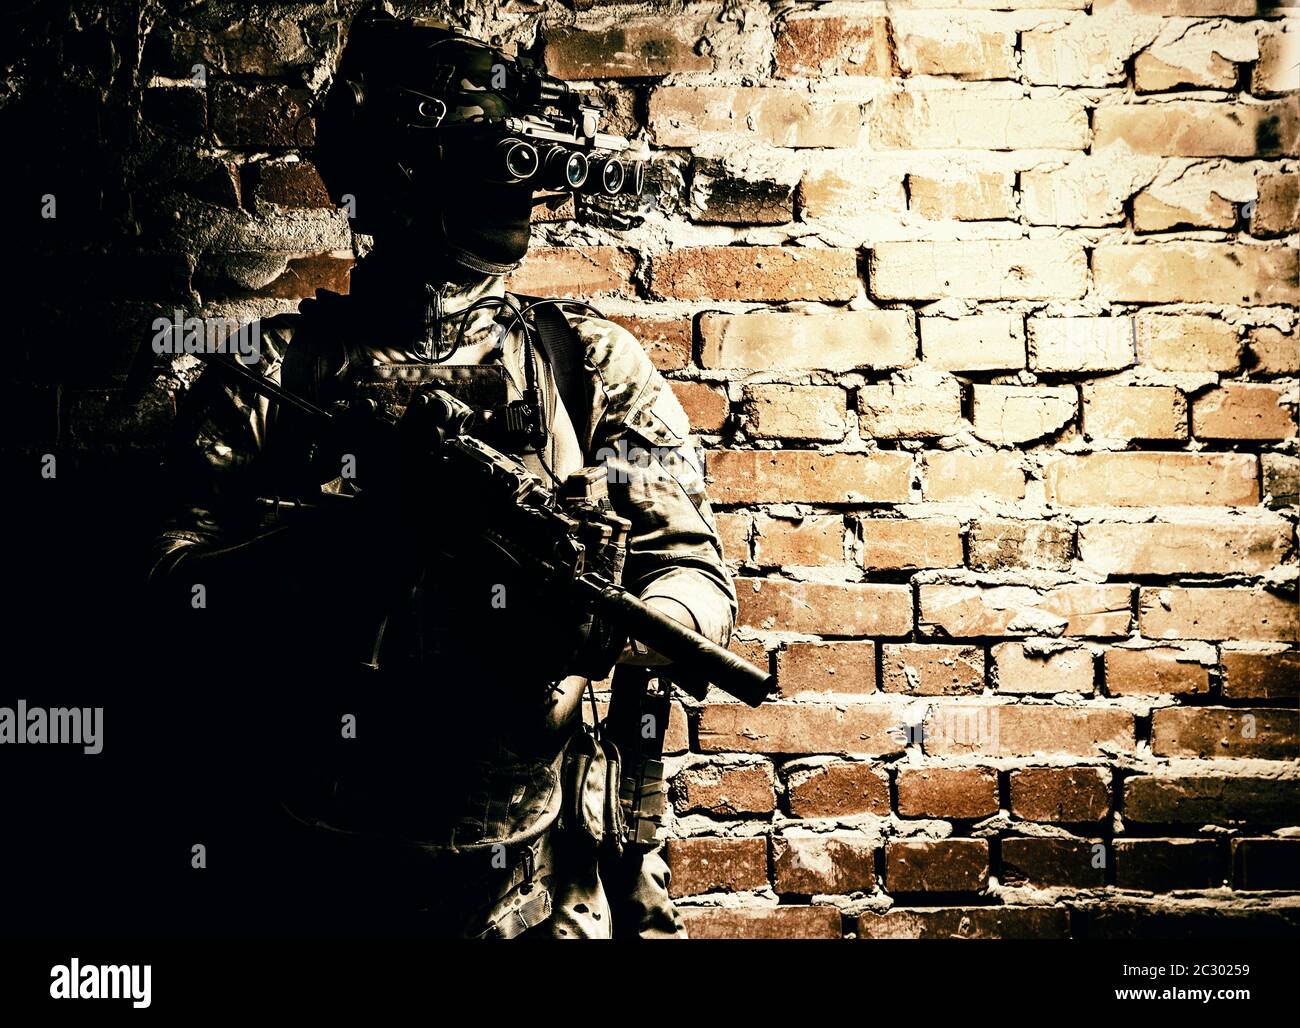 Armee-Spezialeinheiten taktische Gruppenkämpfer in cqb-Mission, mit Radio-Headset, Blick durch vier Linsen Nachtsicht, Wärmebildgerät auf Helm Stockfoto